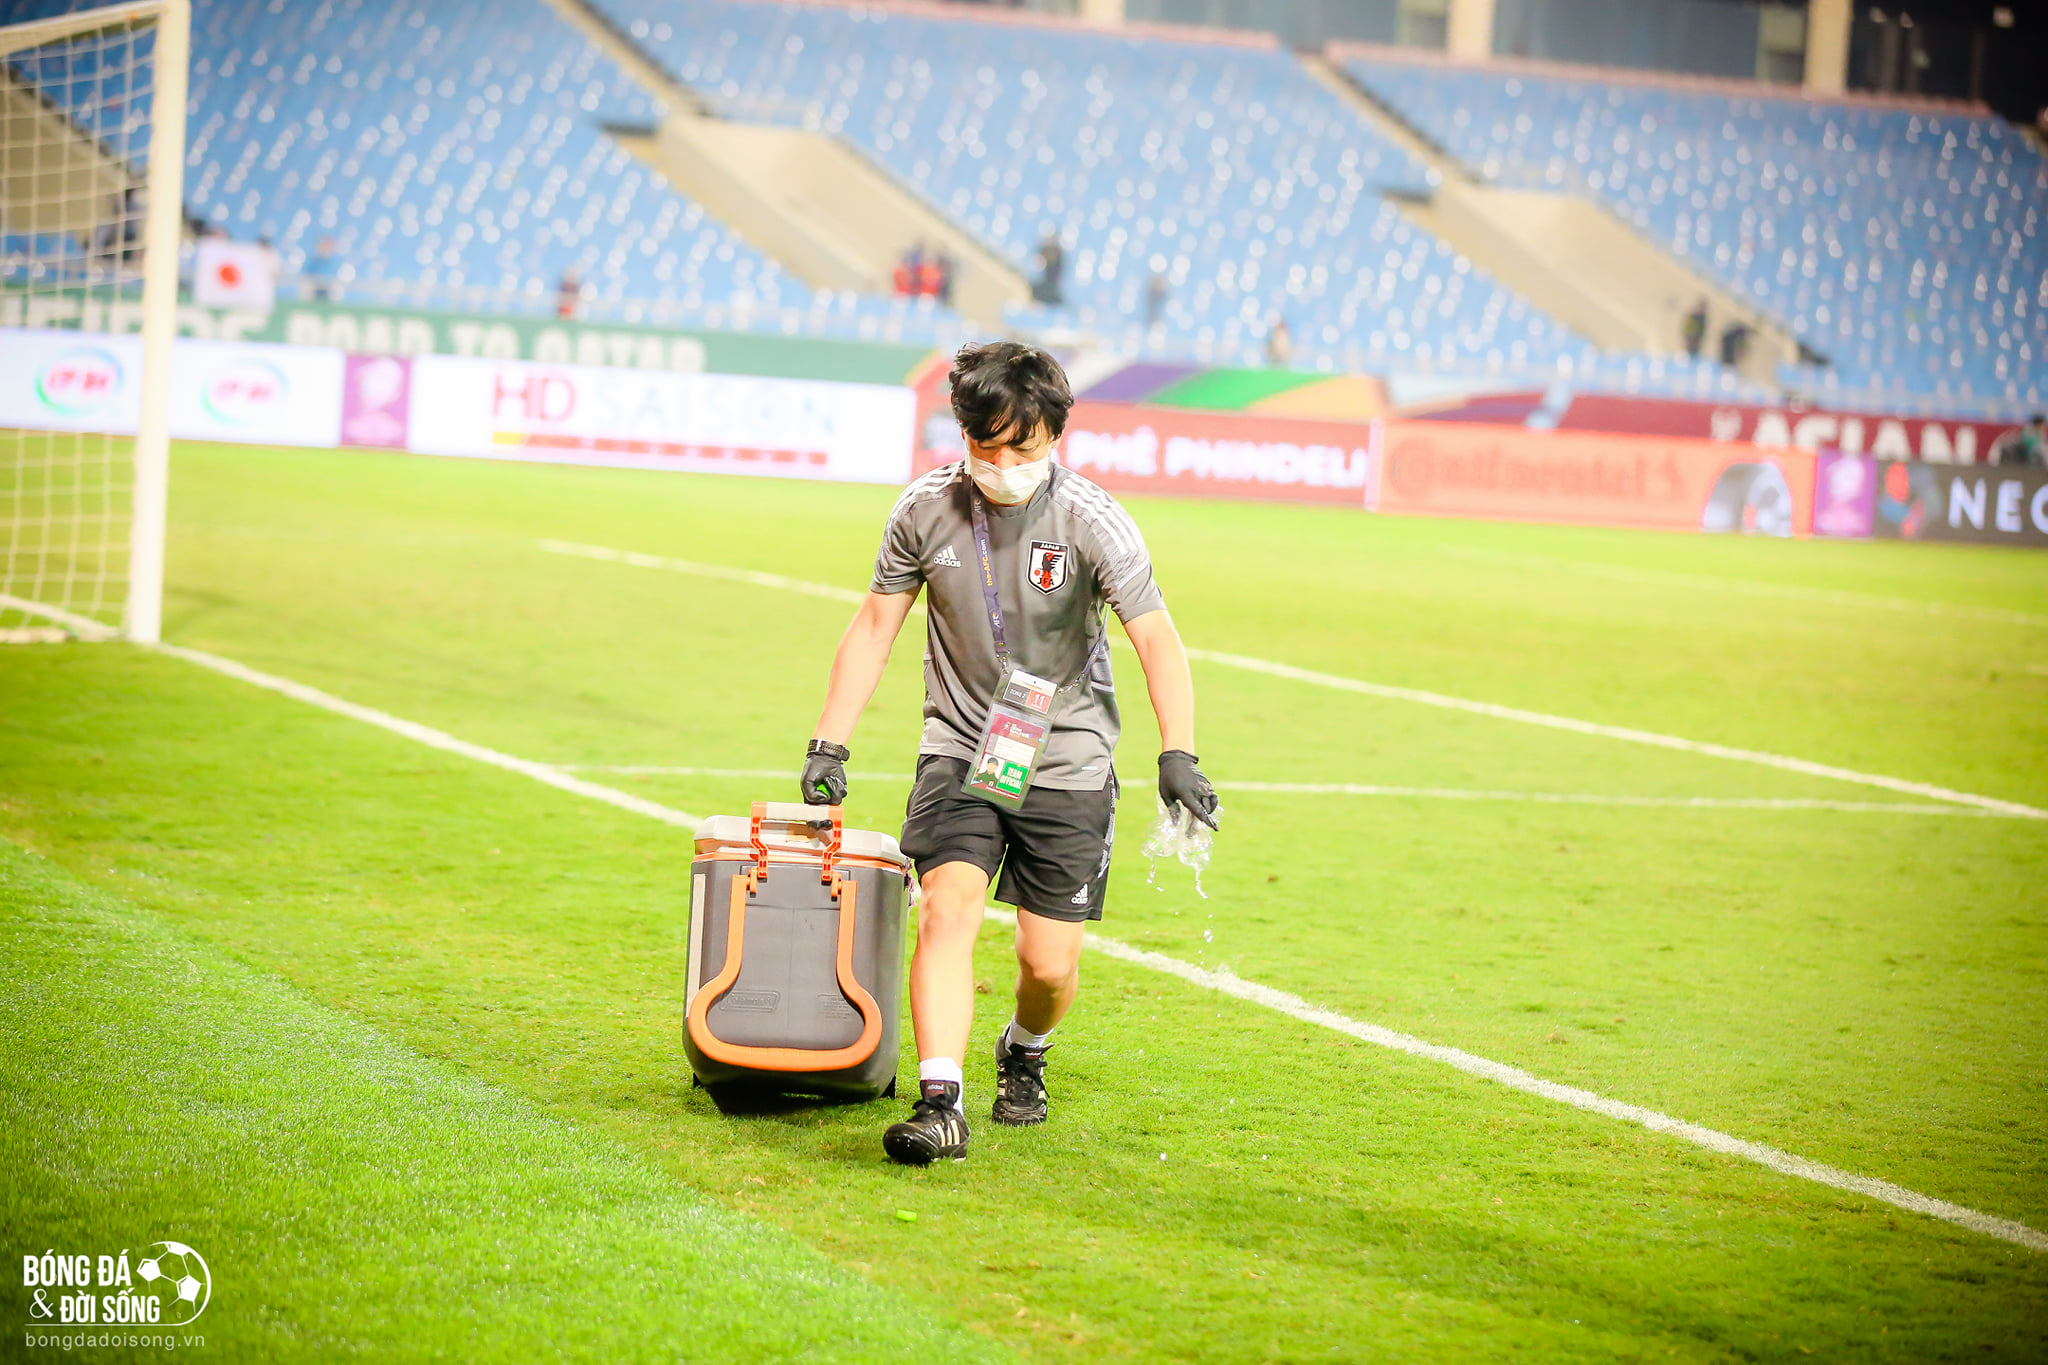 Hành động đẹp: Một thành viên của ĐT Nhật Bản đã đi quanh sân cỏ nhặt hết chai nước mà hai đội bỏ sót sau trận đấu - ảnh 7